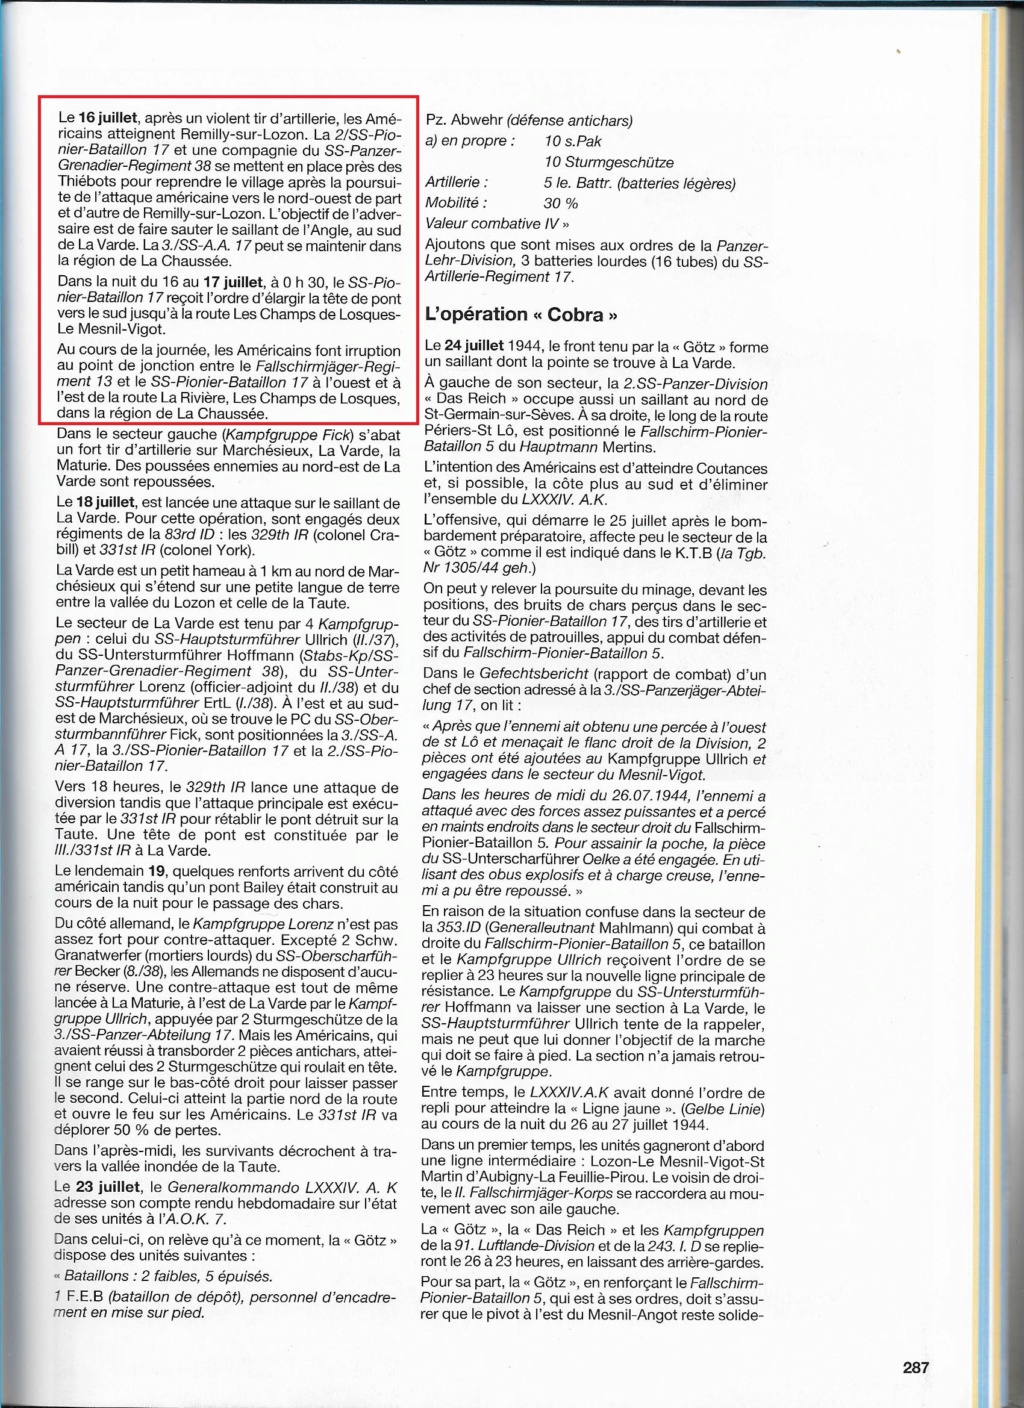 Documents Götz von Berlichingen Normandie  Johann39